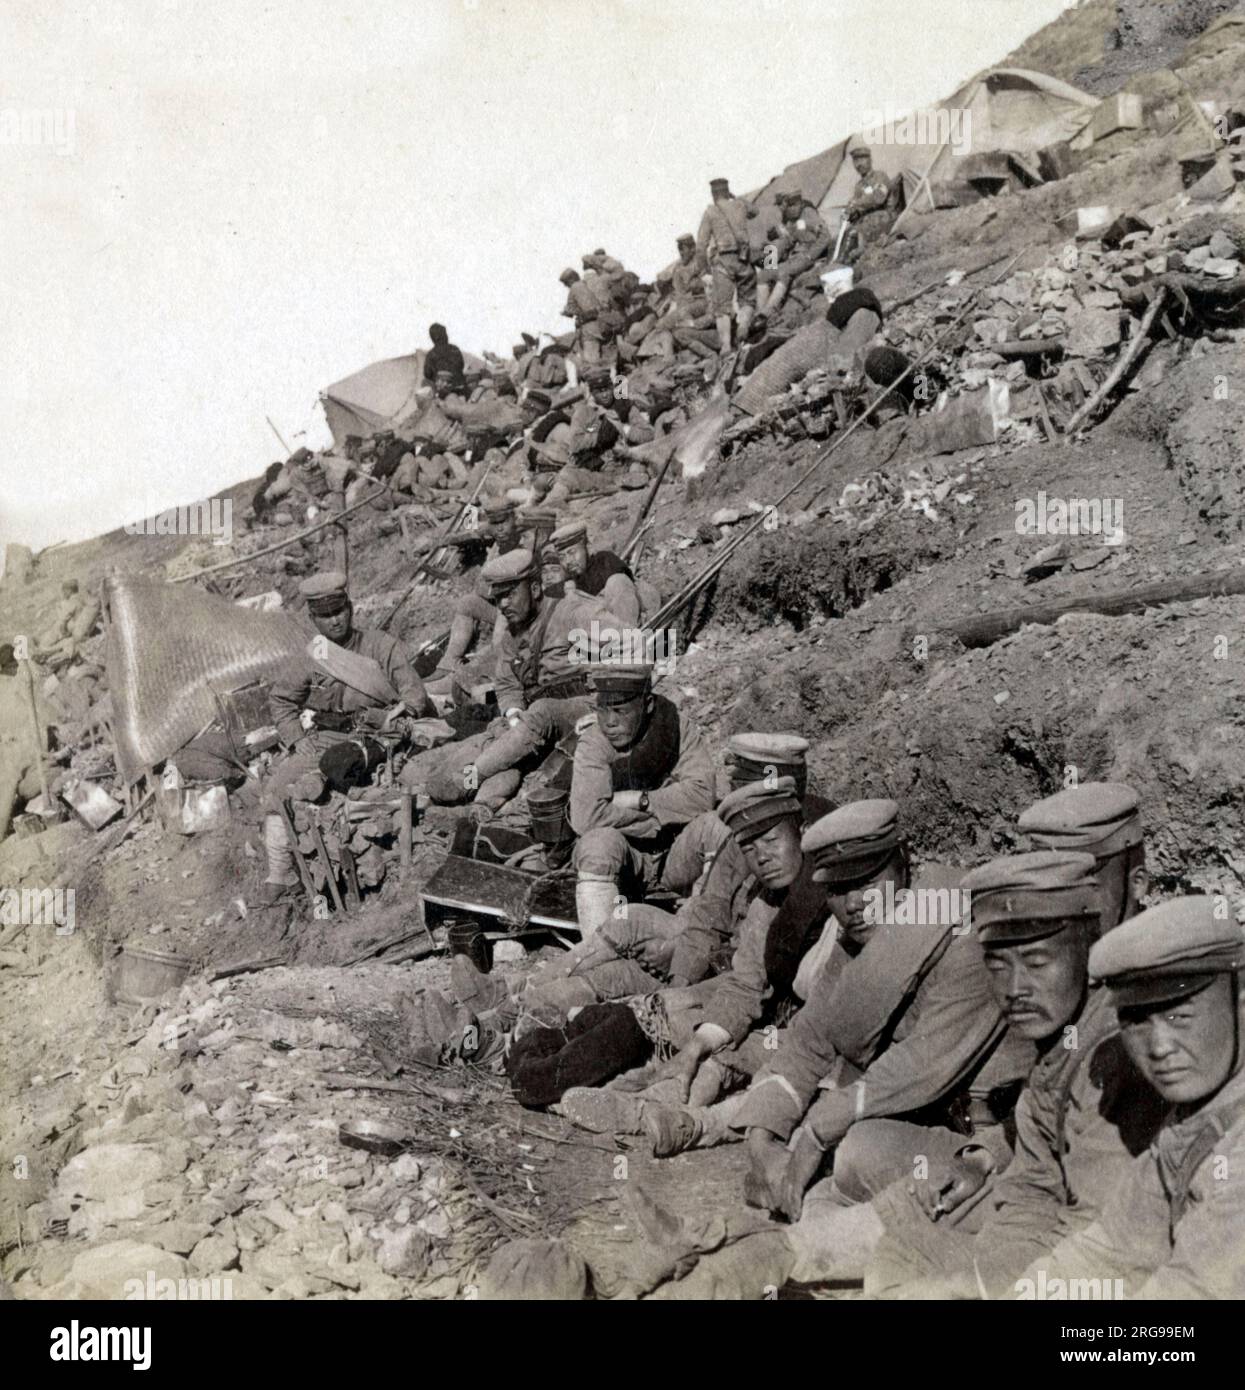 Soldats japonais de la première division près de Port Arthur, en Chine, pendant la guerre russo-japonaise. Ils se préparent à entrer dans les lignes de combat pendant le siège de Port Arthur (août 1904 - janvier 1905). Banque D'Images